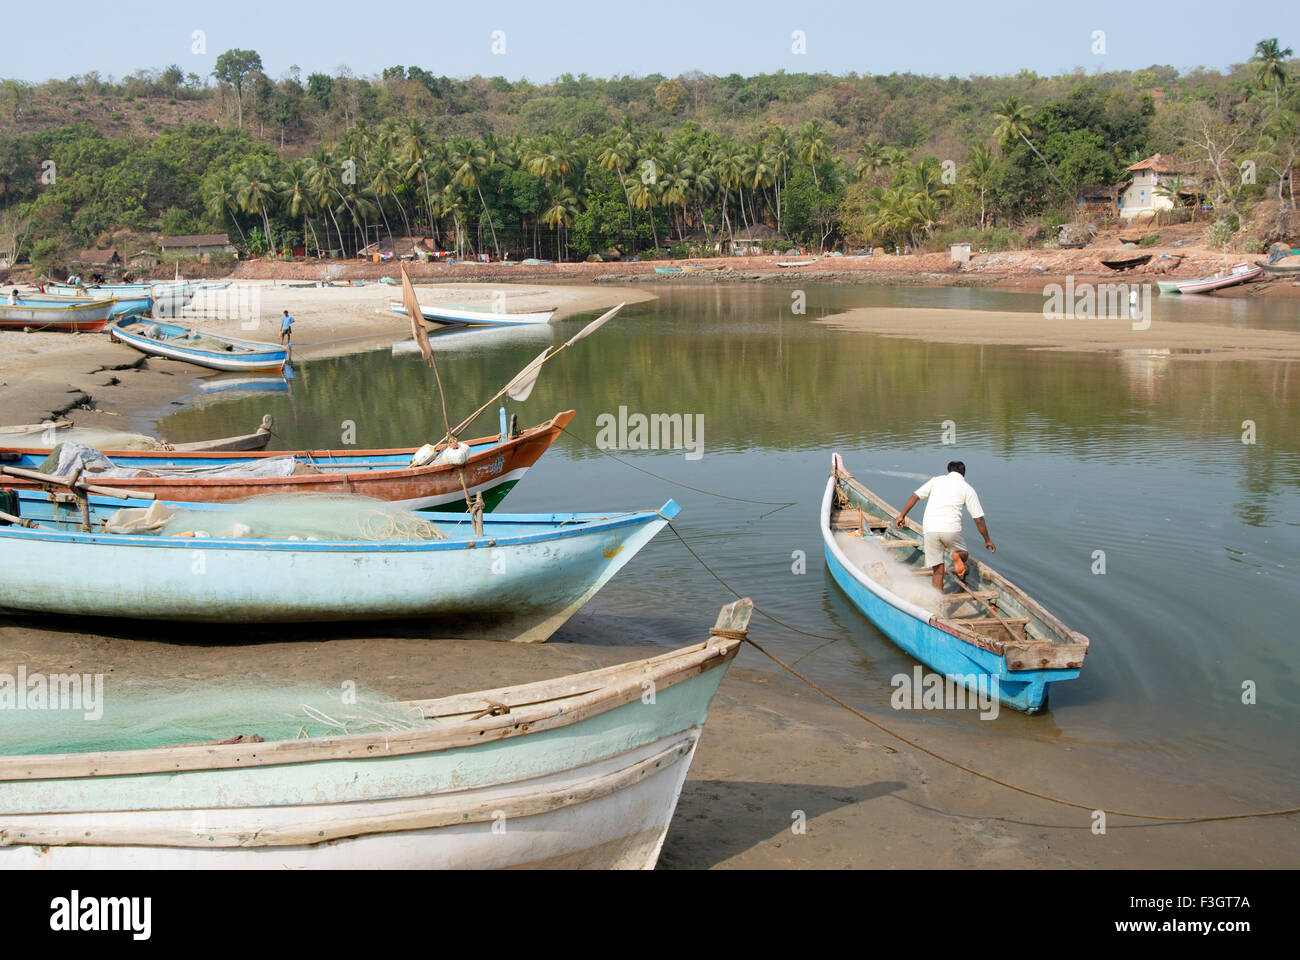 Voir d'nivati bandar port et bateaux de pêche en stationnement taluka Vengurla district ; Sindhudurga ; Maharashtra Inde ; Asie ; Banque D'Images